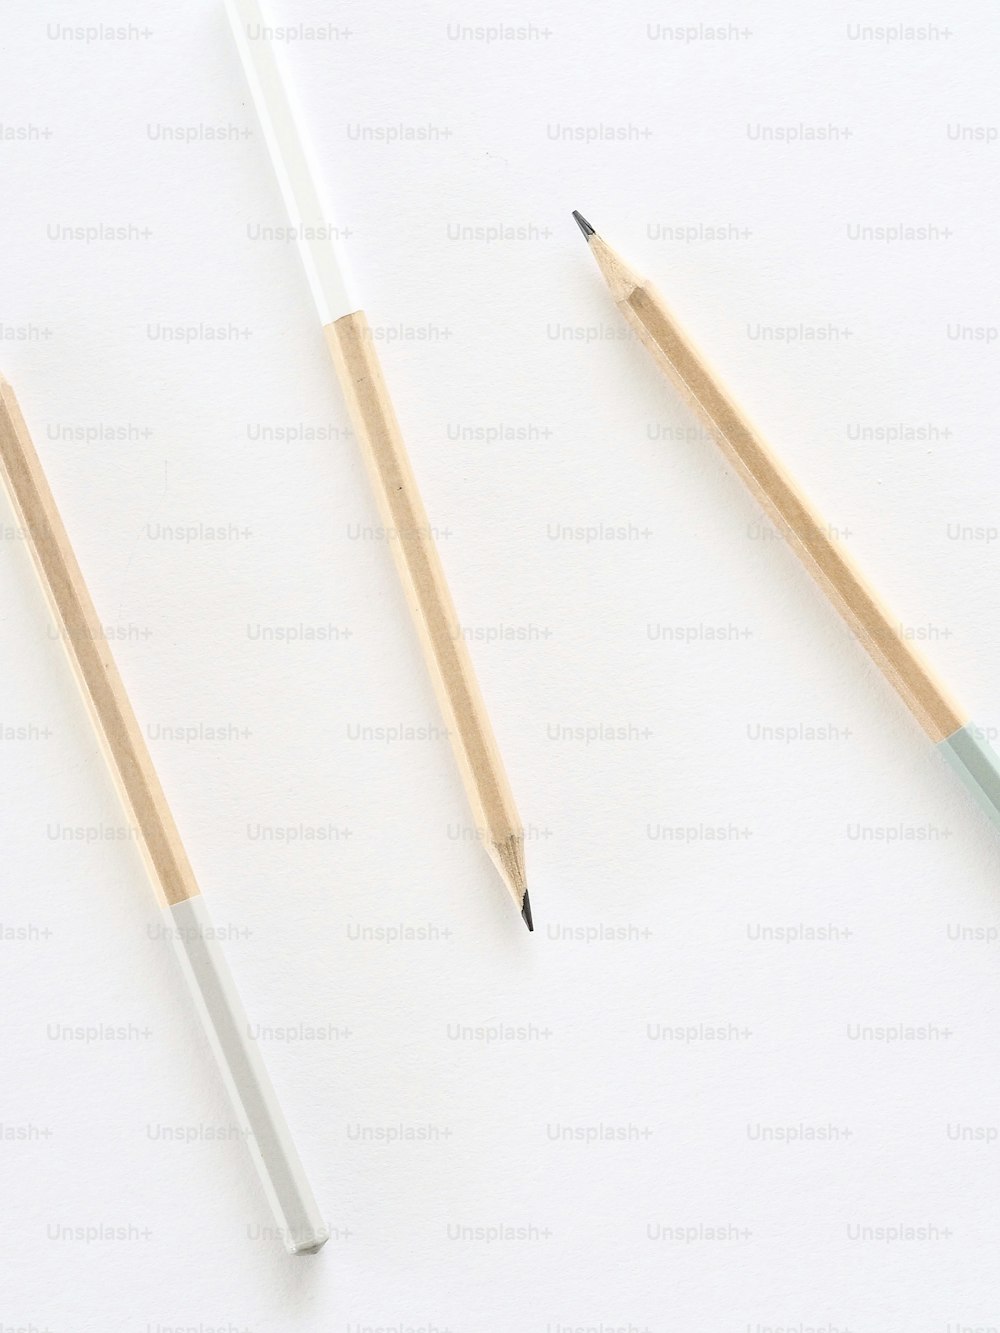 deux crayons et un taille-crayon sur une surface blanche